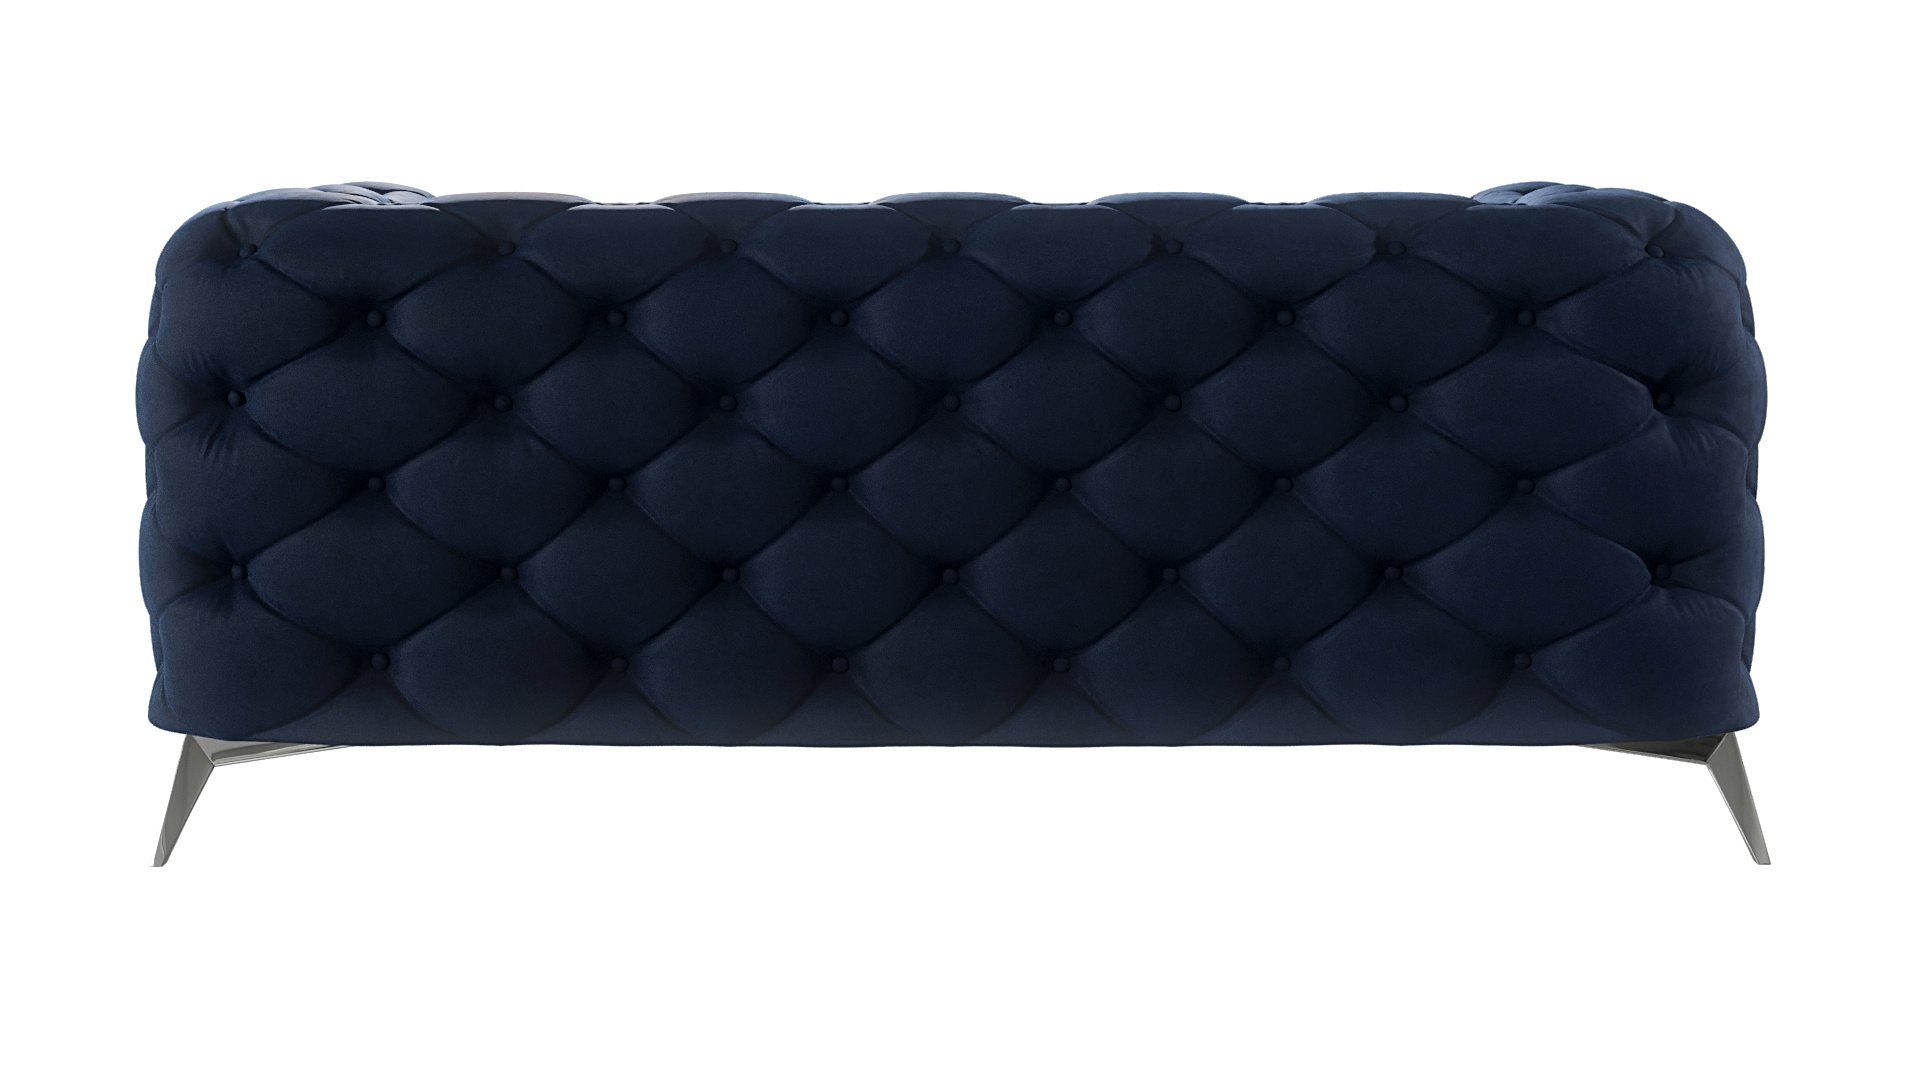 Füßen, Kalina Sofa Marineblau Silber Wellenfederung 2-Sitzer mit S-Style Metall Chesterfield Möbel mit